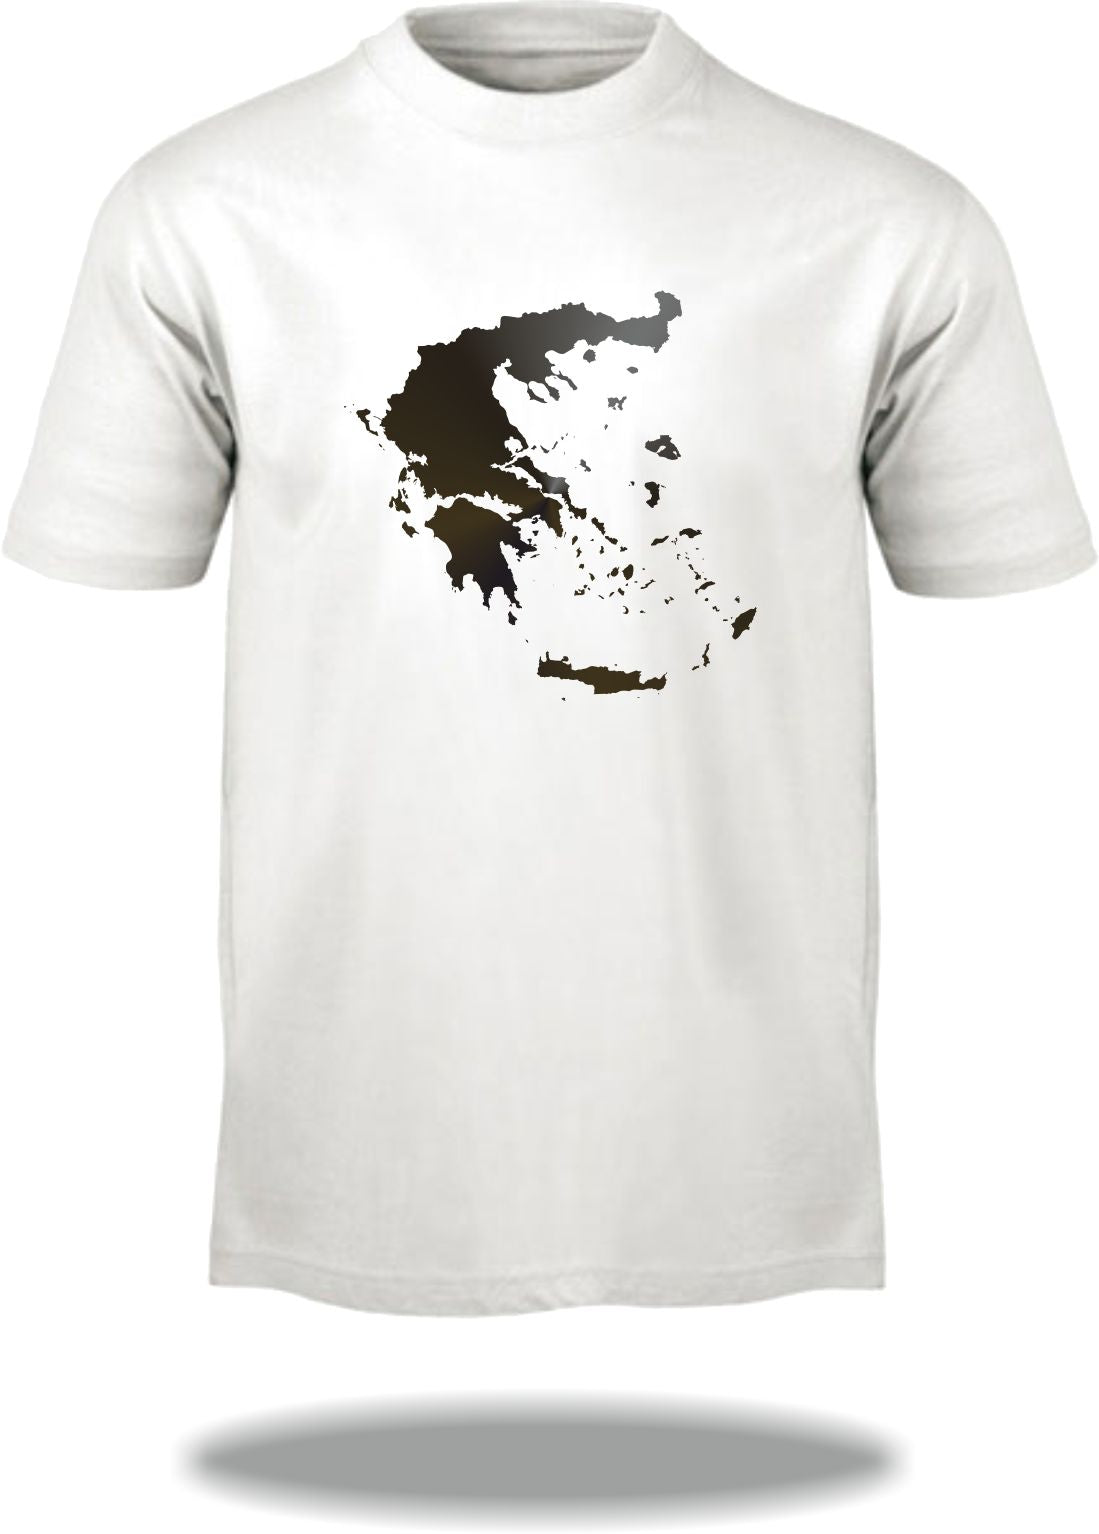 T-Shirt Landkarte Griechenland / Map of Greece / Hellas